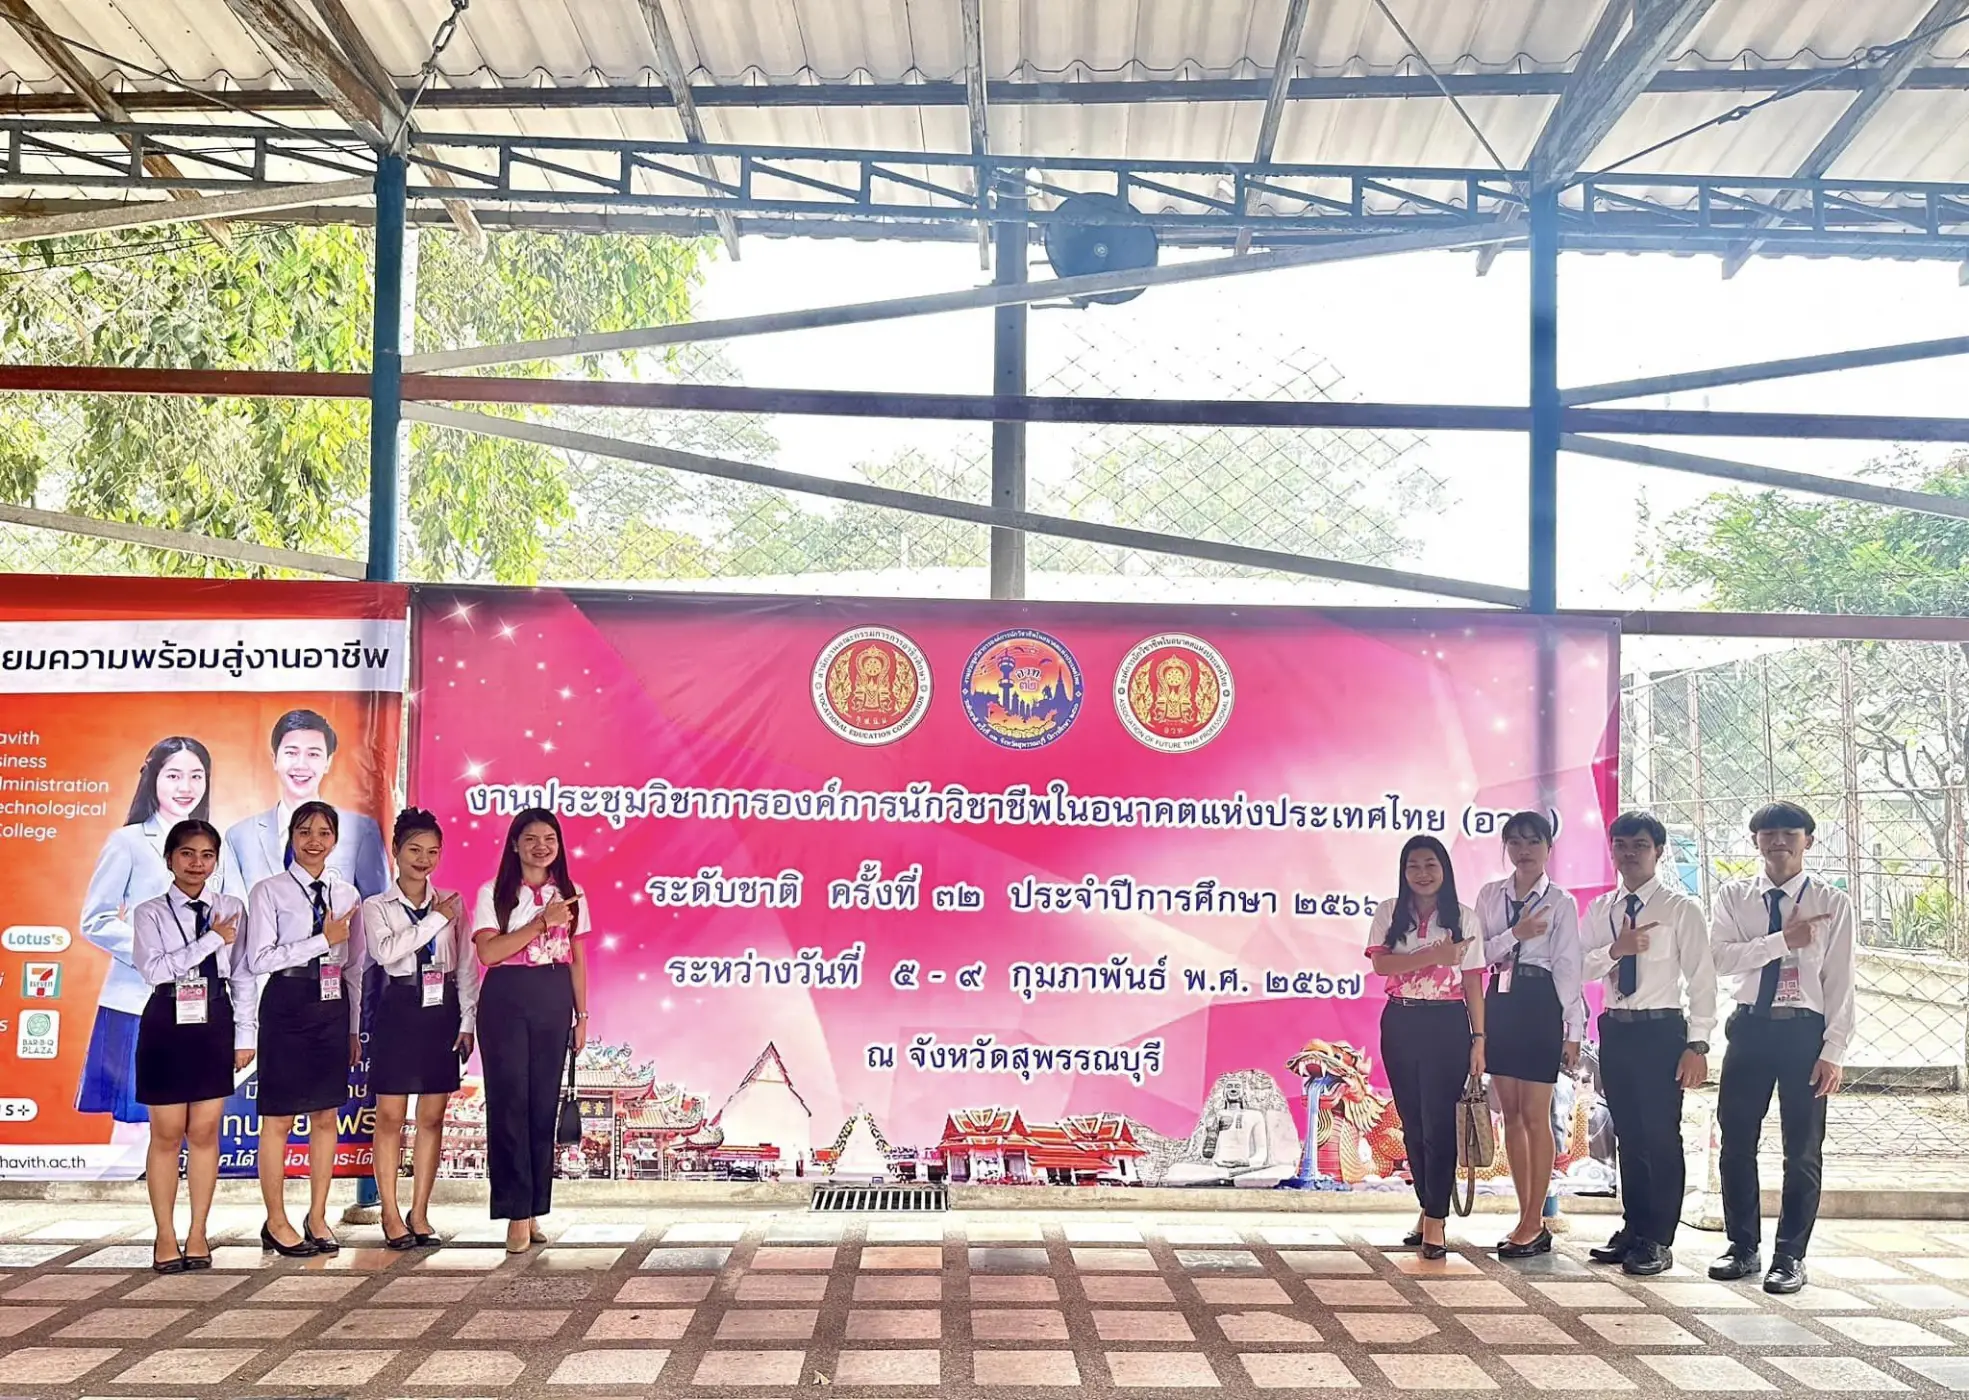 รางวัลชมเชย มาตรฐานระดับเหรียญทอง ทักษะการเขียนแผนธุรกิจ ระดับ ปวส. งานประชุมองค์การนักวิชาชีพในอนาคตแห่งประเทศไทย (อวท.) ระดับชาติ ครั้งที่ 32 ประจำปีการศึกษา 2566 จ.สุพรรณบุรี